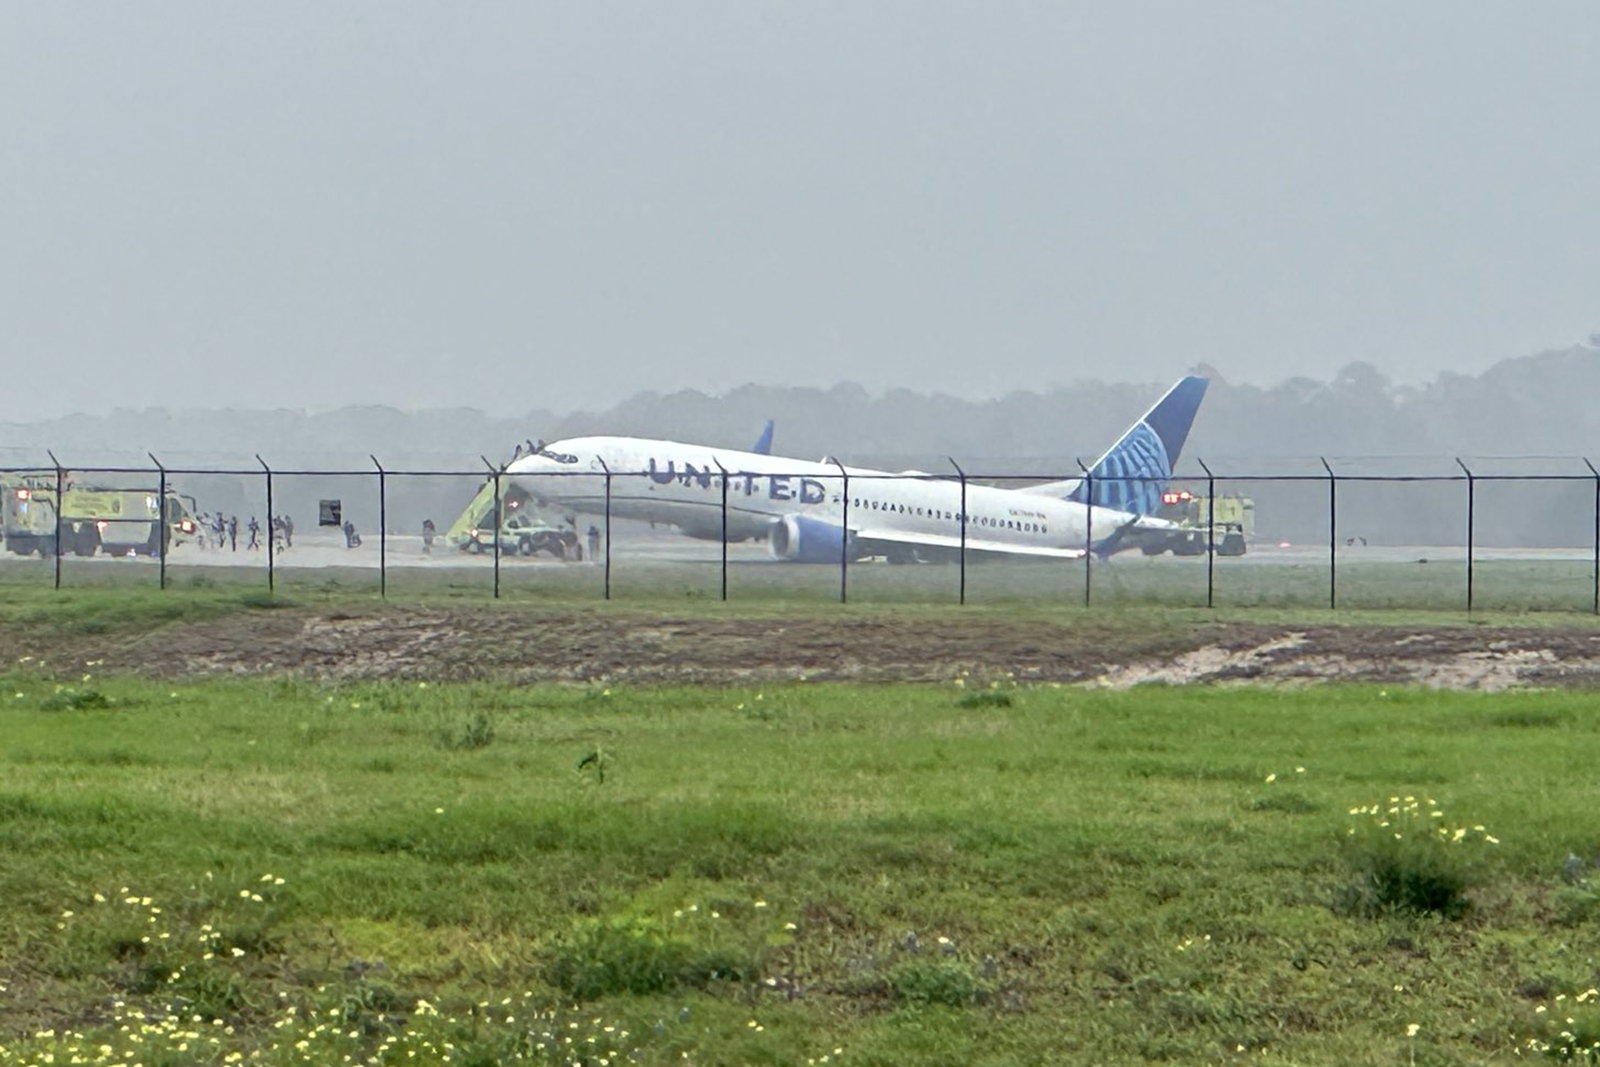 El 737 MAX 8 de United Airlines se salió de la pista en el aeropuerto de Houston. Foto: Ren Ganner